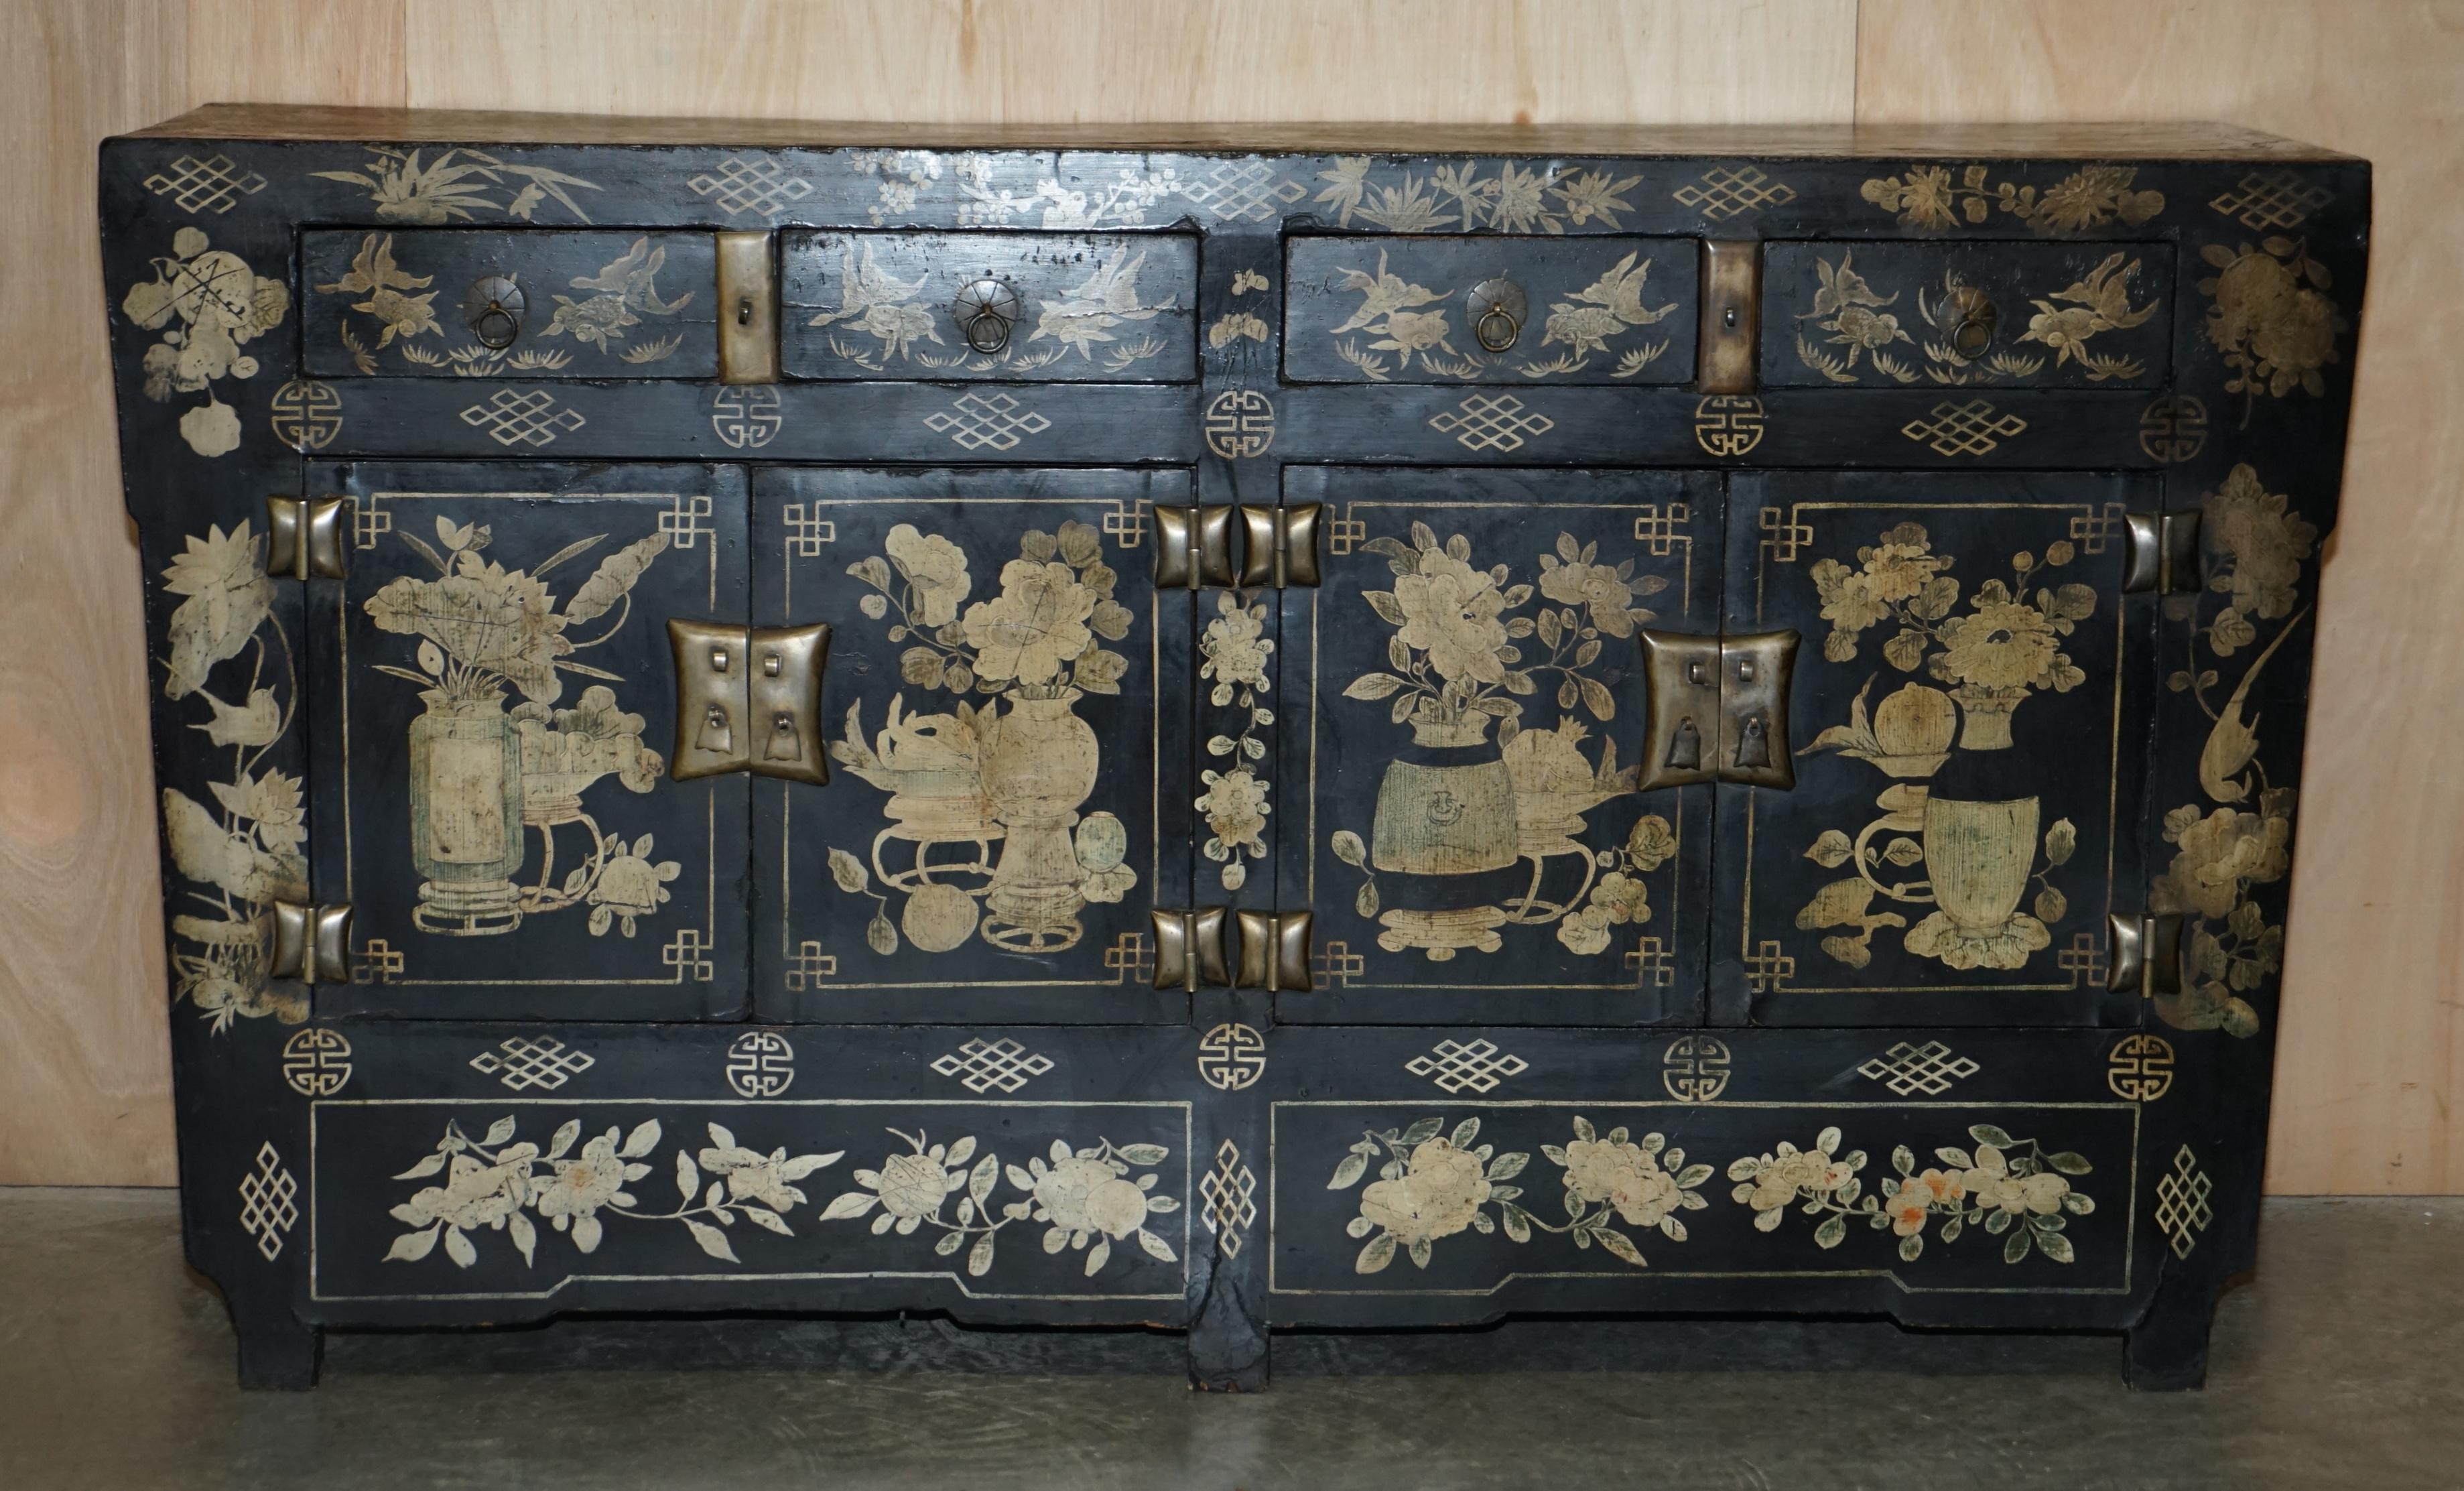 Wir freuen uns, dieses originale, um 1860 in China handgefertigte, handgeschnitzte, bemalte und lackierte Sideboard mit Chinoiserie-Details im ganzen Haus zum Verkauf anzubieten.

Es handelt sich um ein sehr schönes und dekoratives Stück, das viel